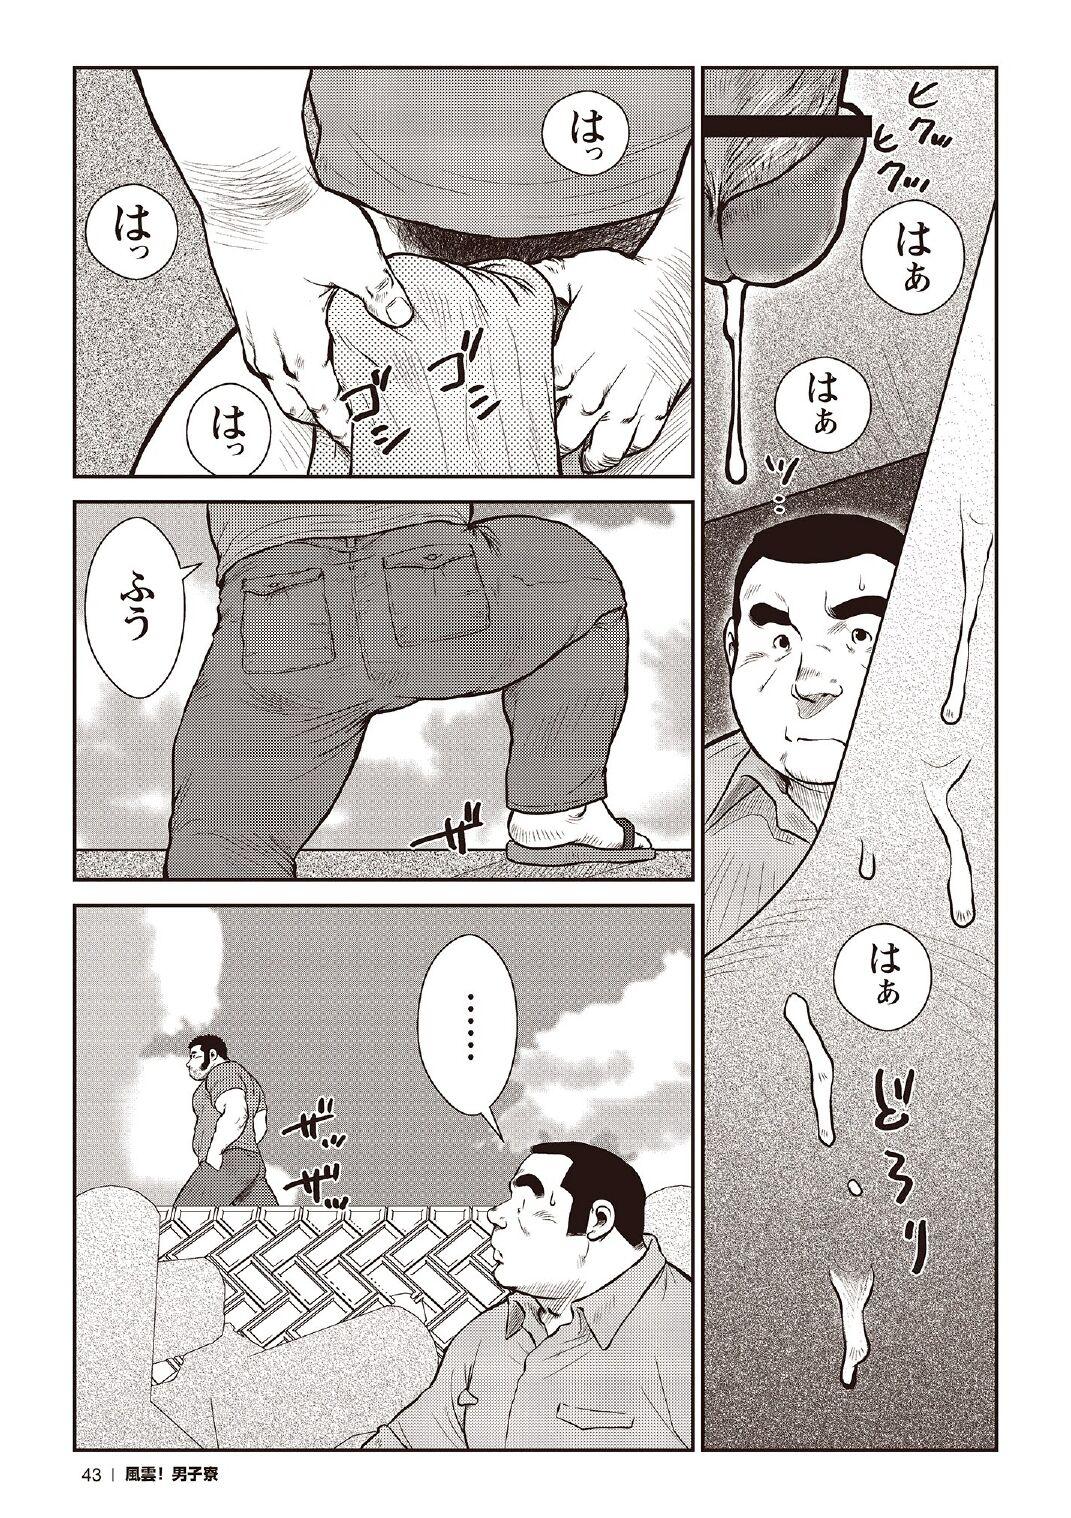 [Ebisubashi Seizou] Ebisubashi Seizou Tanpen Manga Shuu 2 Fuuun! Danshi Ryou [Bunsatsuban] PART 2 Bousou Hantou Taifuu Zensen Ch. 1 + Ch. 2 [Digital] 20